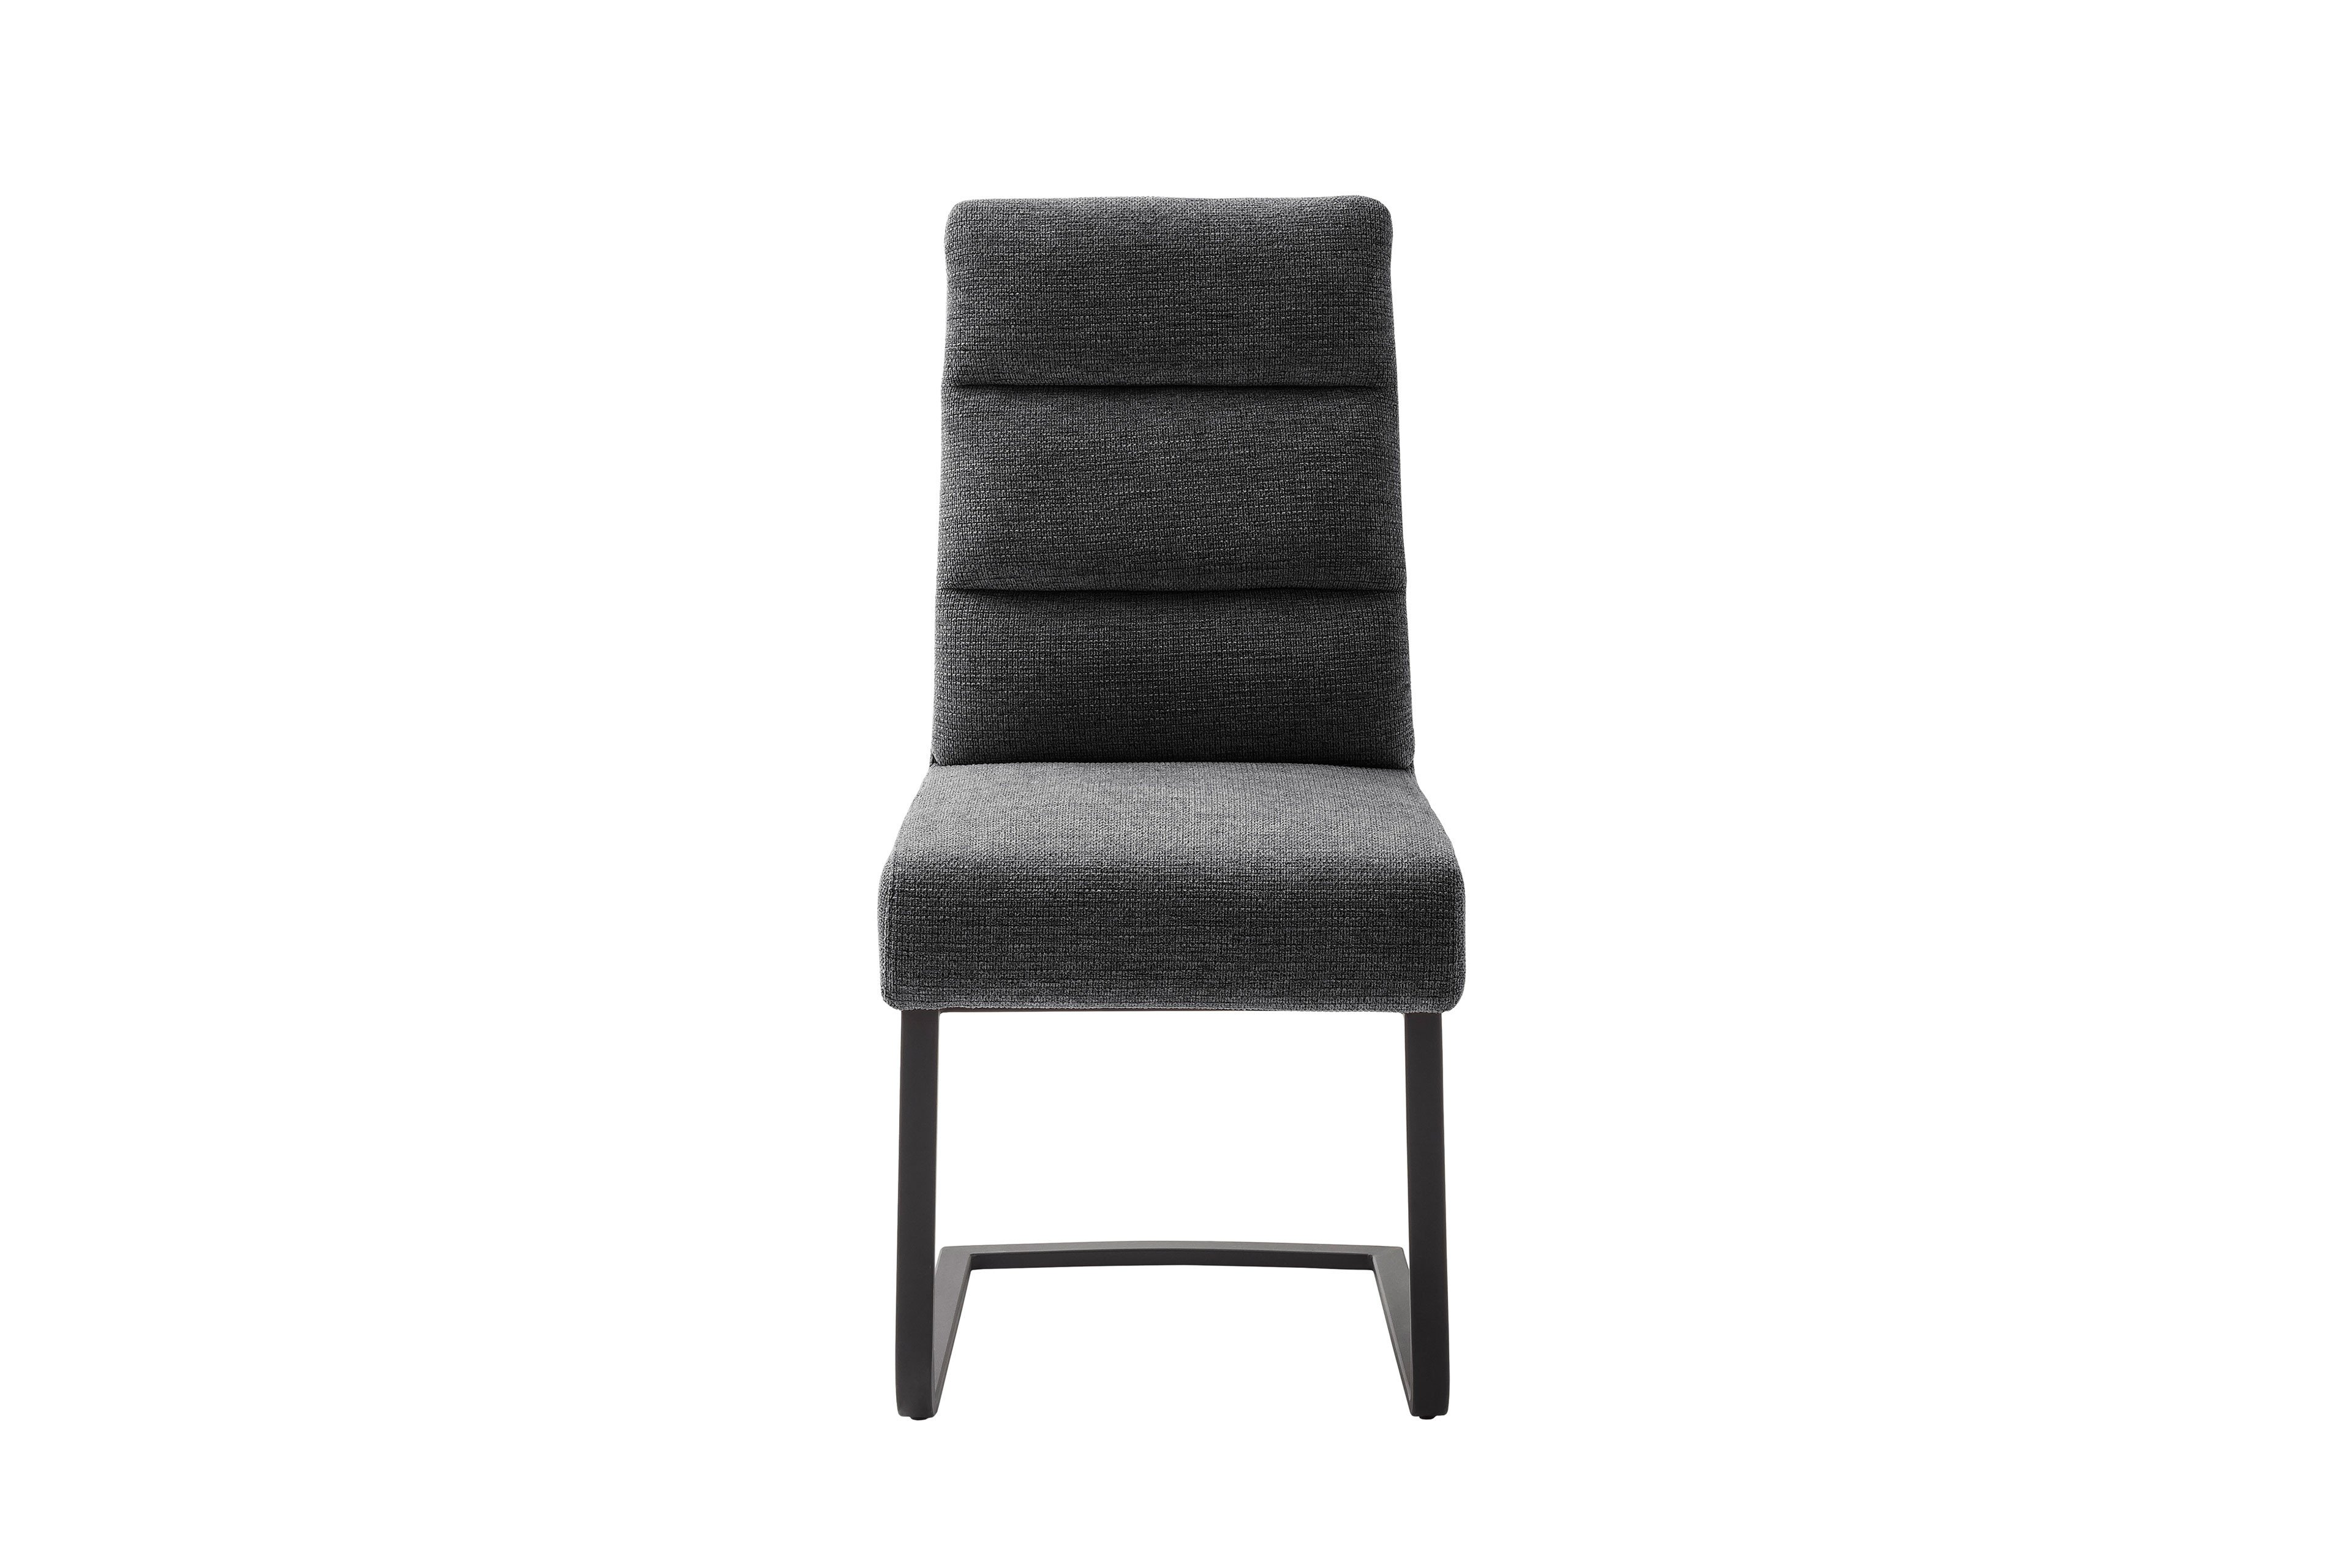 MCA furniture Stuhl Limassol Letz Ihr matt schwarz | Möbel anthrazit/ Online-Shop 